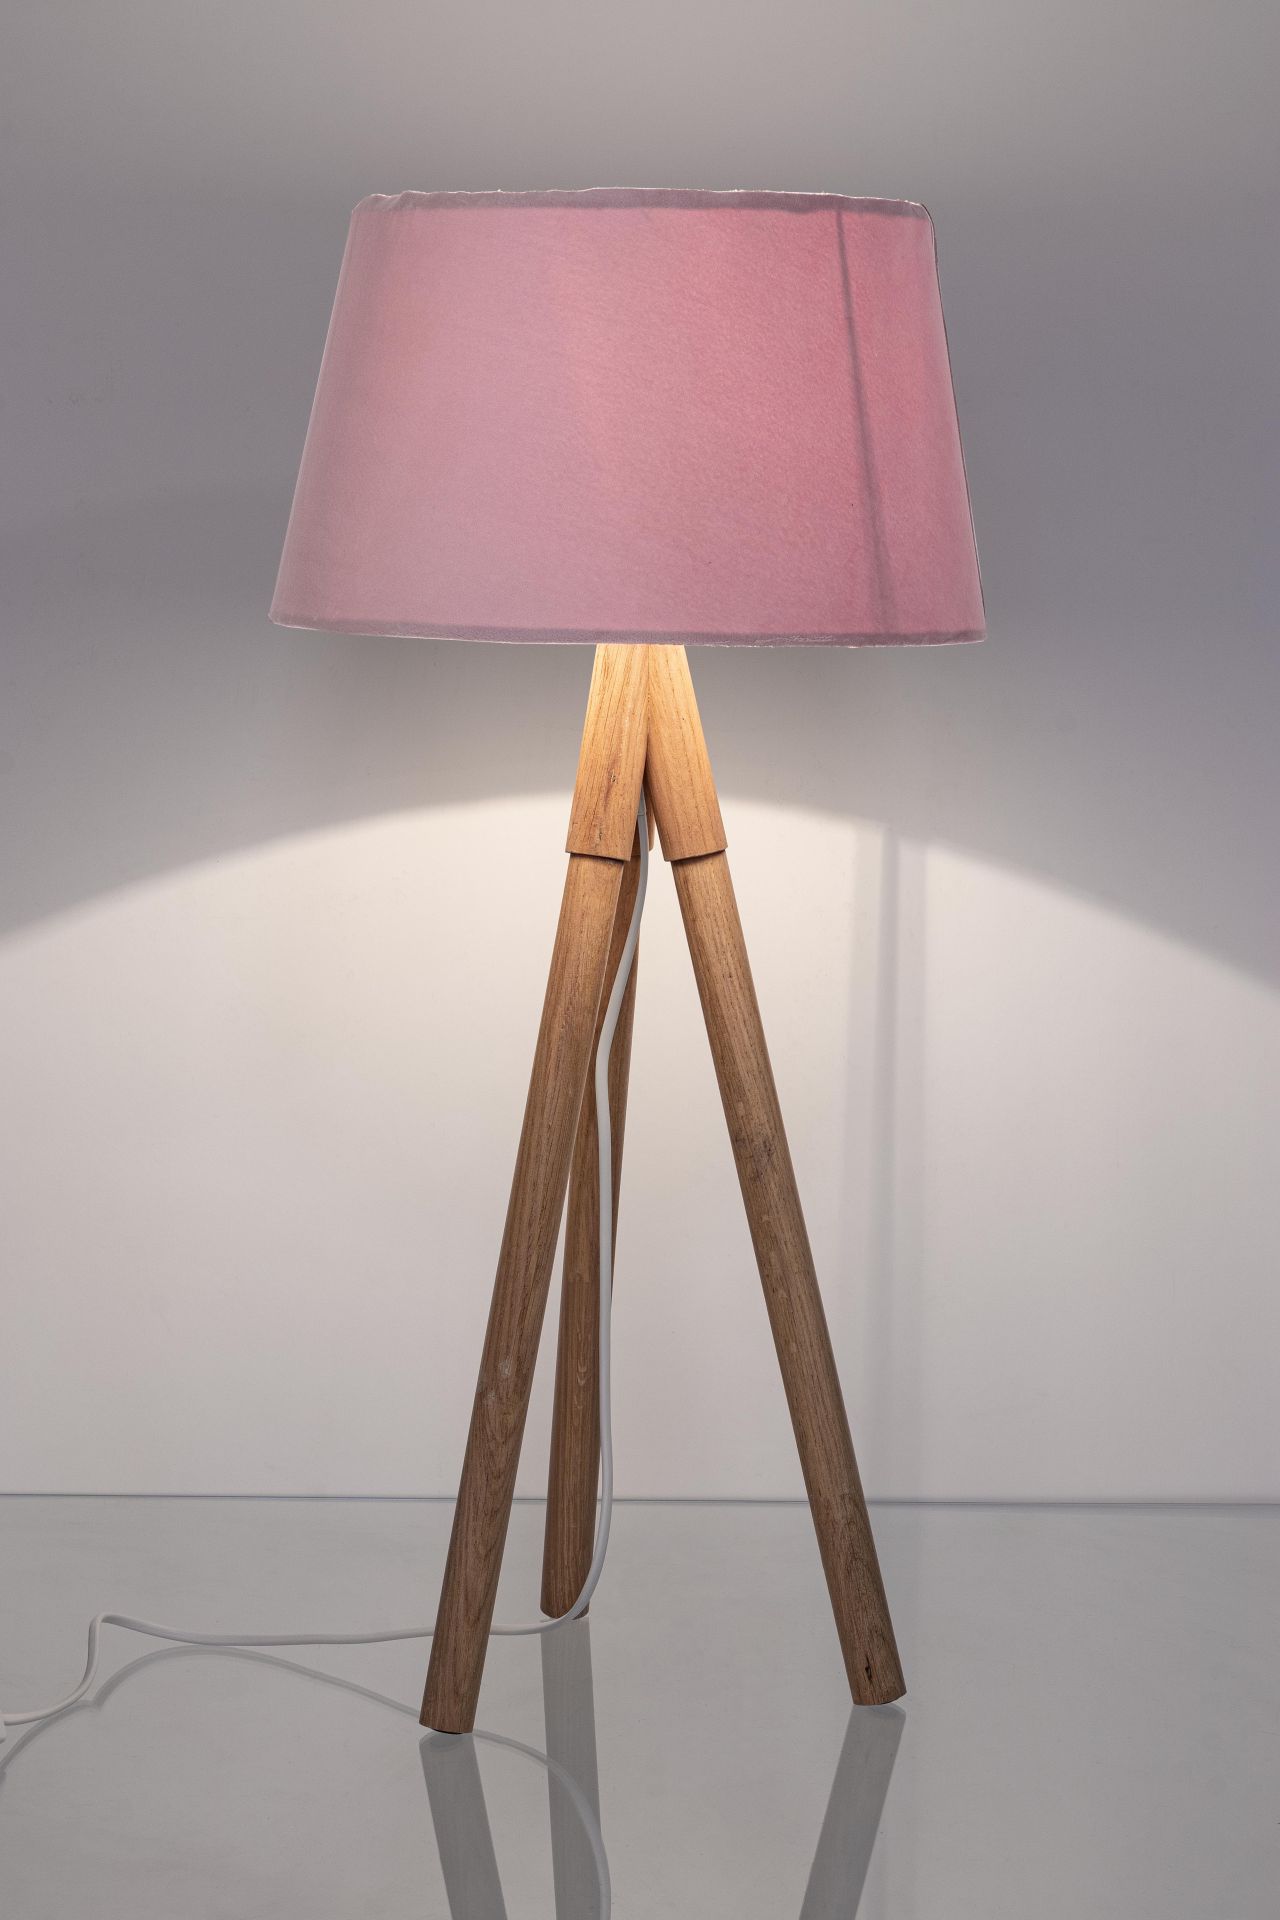 Die Tischleuchte Wallas überzeugt mit ihrem klassischen Design. Gefertigt wurde sie aus Tannenholz, welches einen natürlichen Farbton besitzt. Der Lampenschirm ist aus Samt und hat eine rosa Farbe. Die Lampe besitzt eine Höhe von 69 cm.